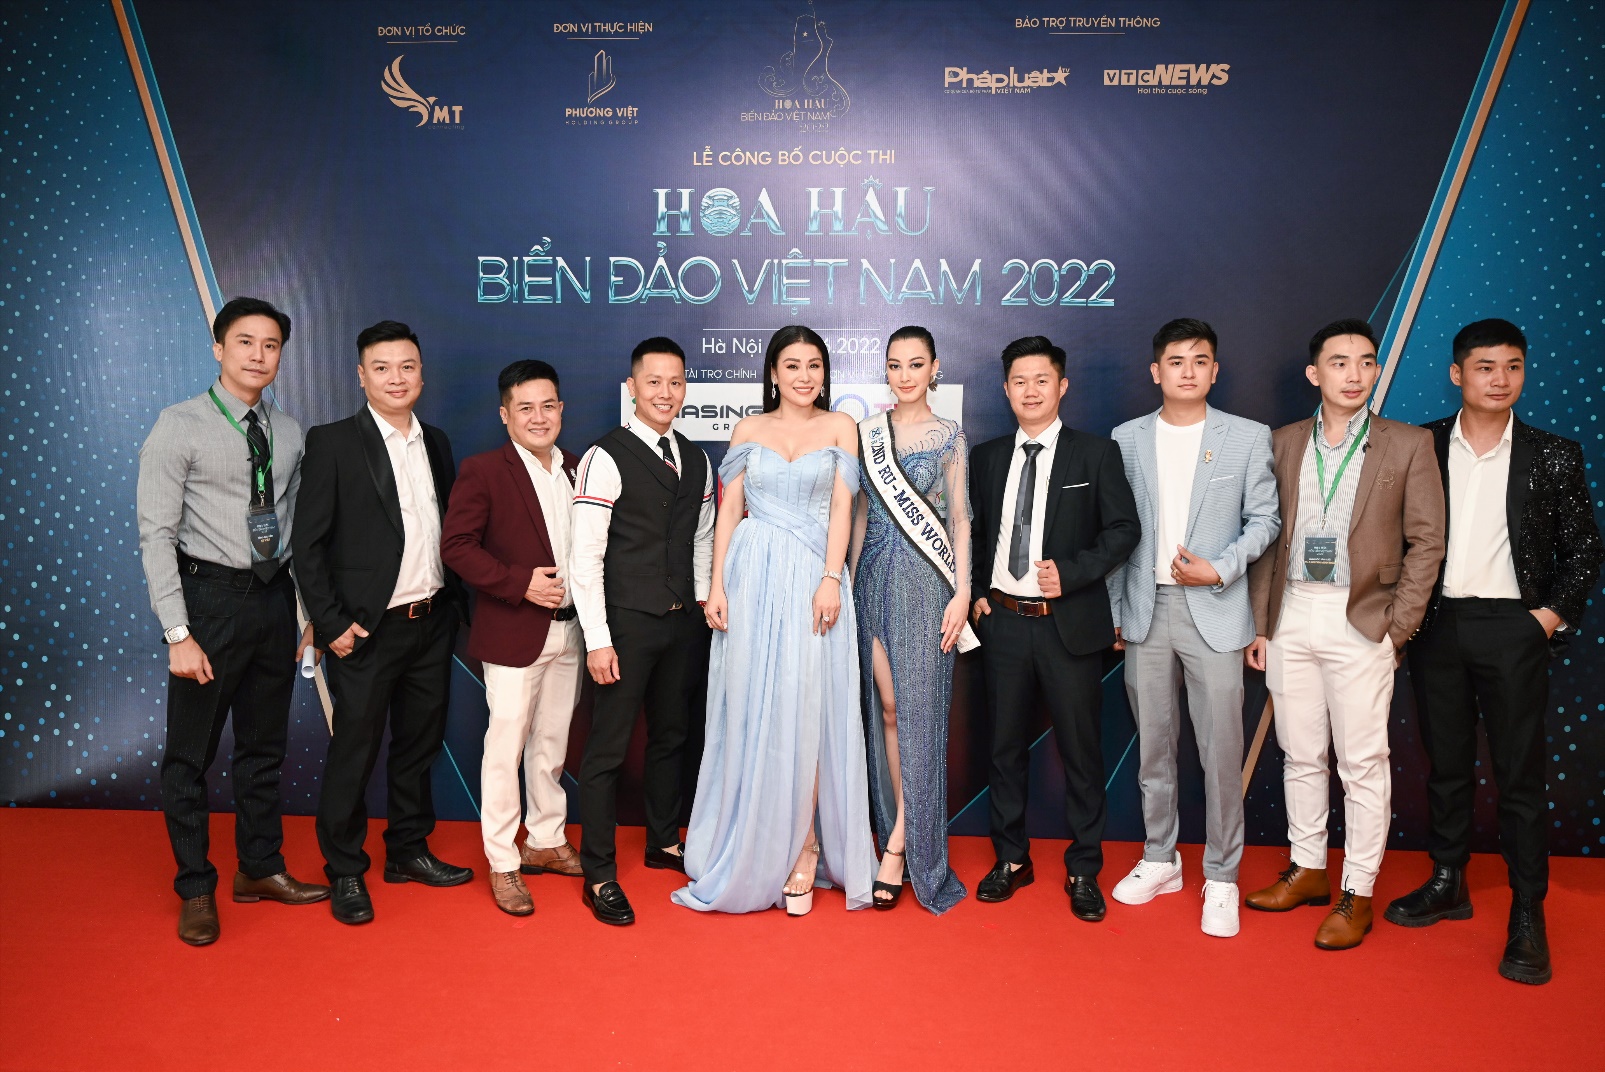 Hoa hậu Biển Đảo Việt Nam 2022: Trưởng ban tổ chức Đàm Hương Thủy và những tâm huyết dành cho chương trình - ảnh 5